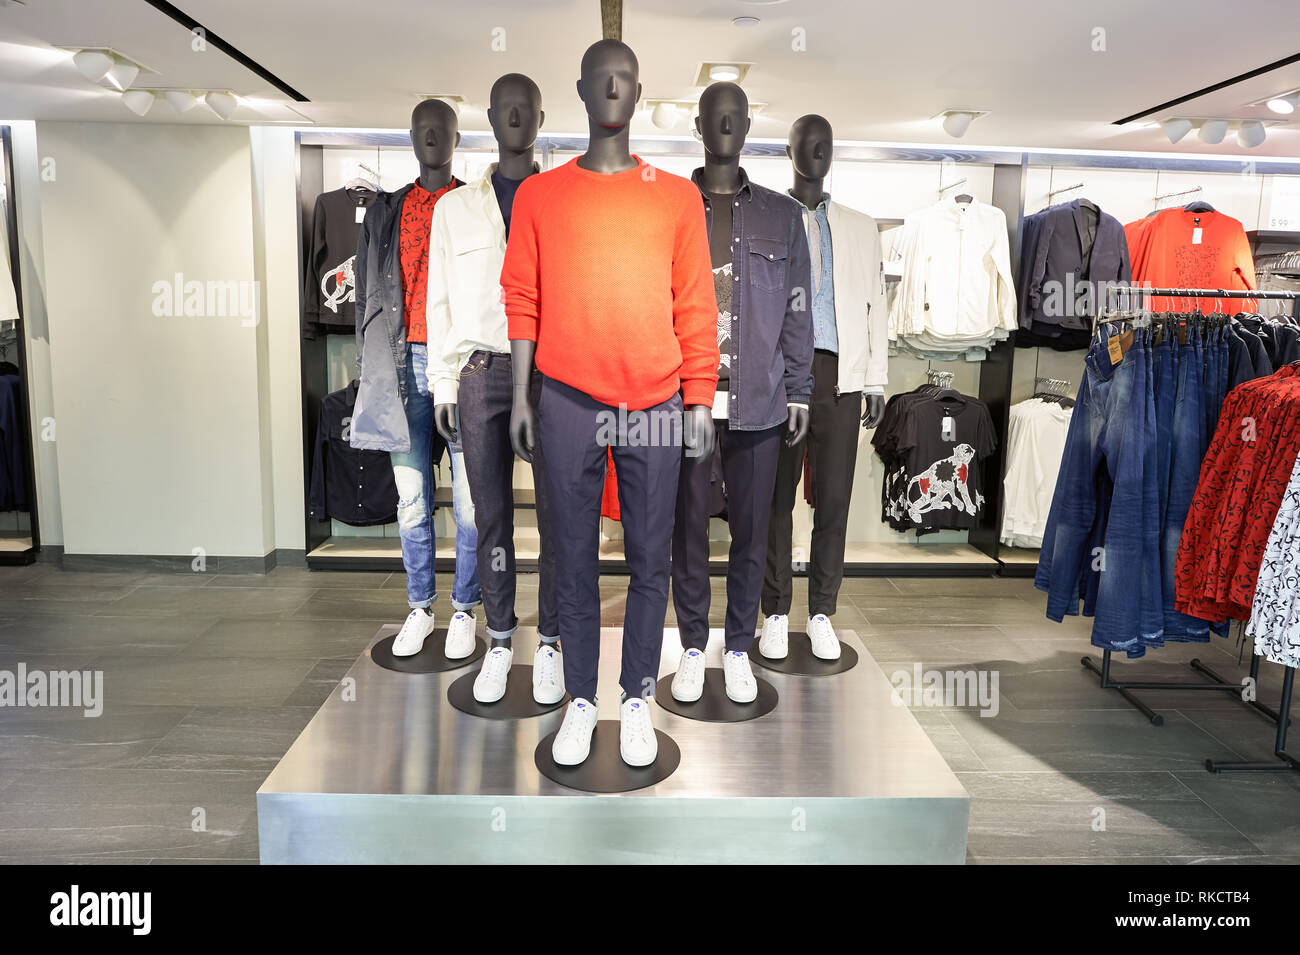 Hongkong - ca. Januar 2016: H und M Store in Hongkong. H und M für seine  schnellen - Mode Bekleidung für Männer, Frauen, Jugendliche und Kinder  bekannt Stockfotografie - Alamy